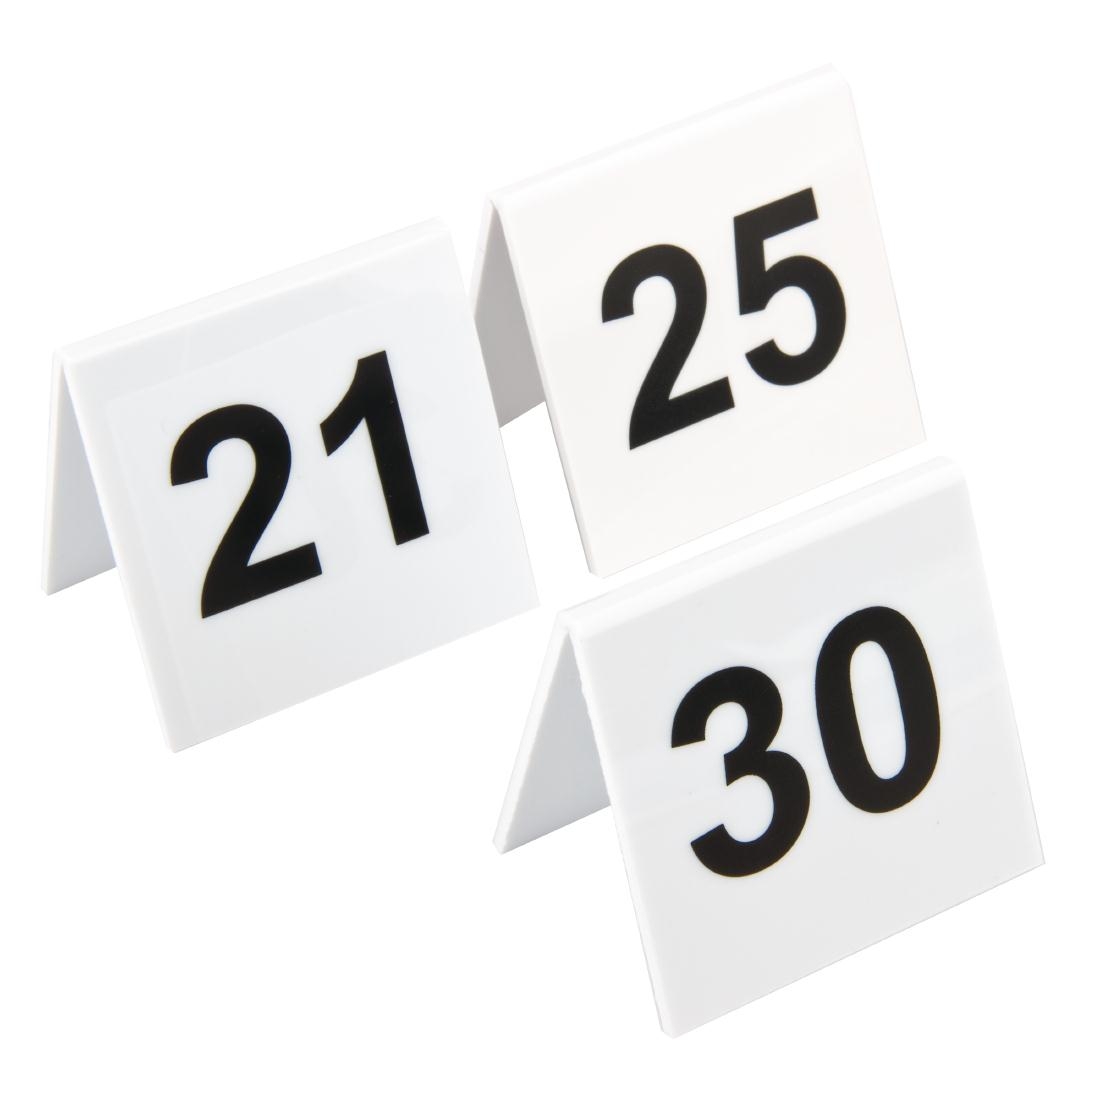 21 30. Numbers 21-30. Table number sign. Table number sign PNG.